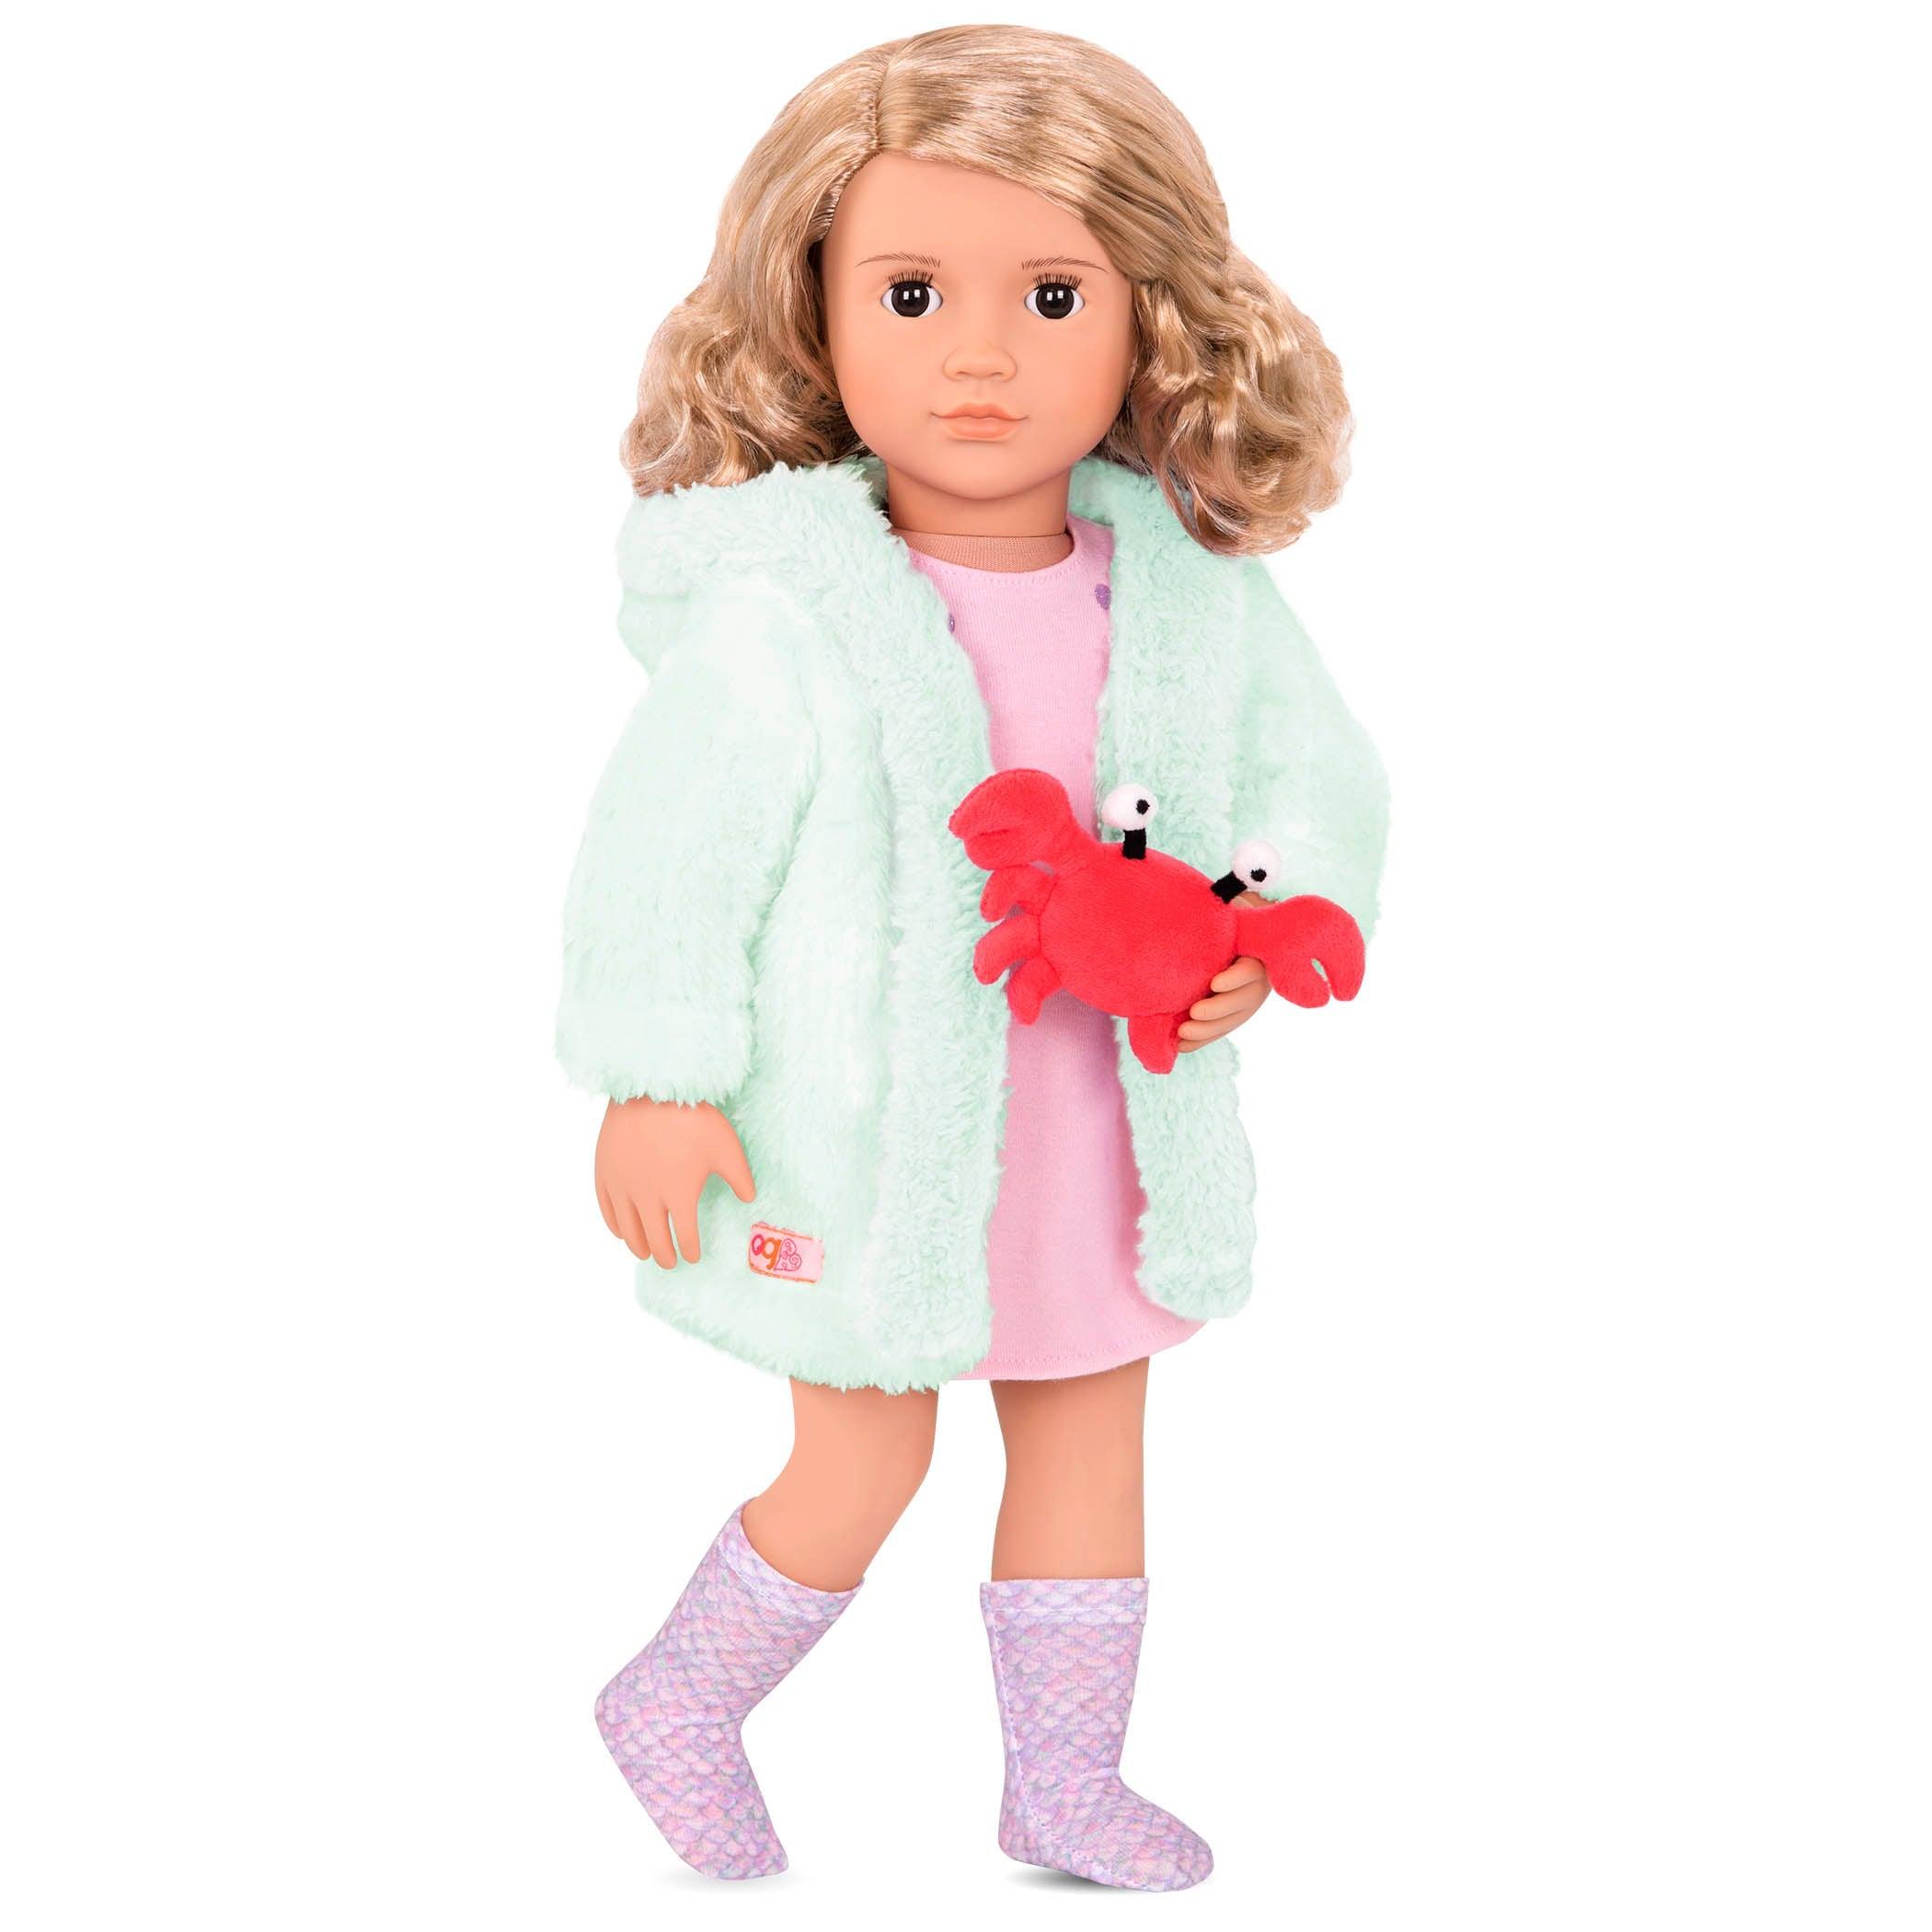 Notre génération: Seaside Dreams Robe et Pajamas pour la poupée